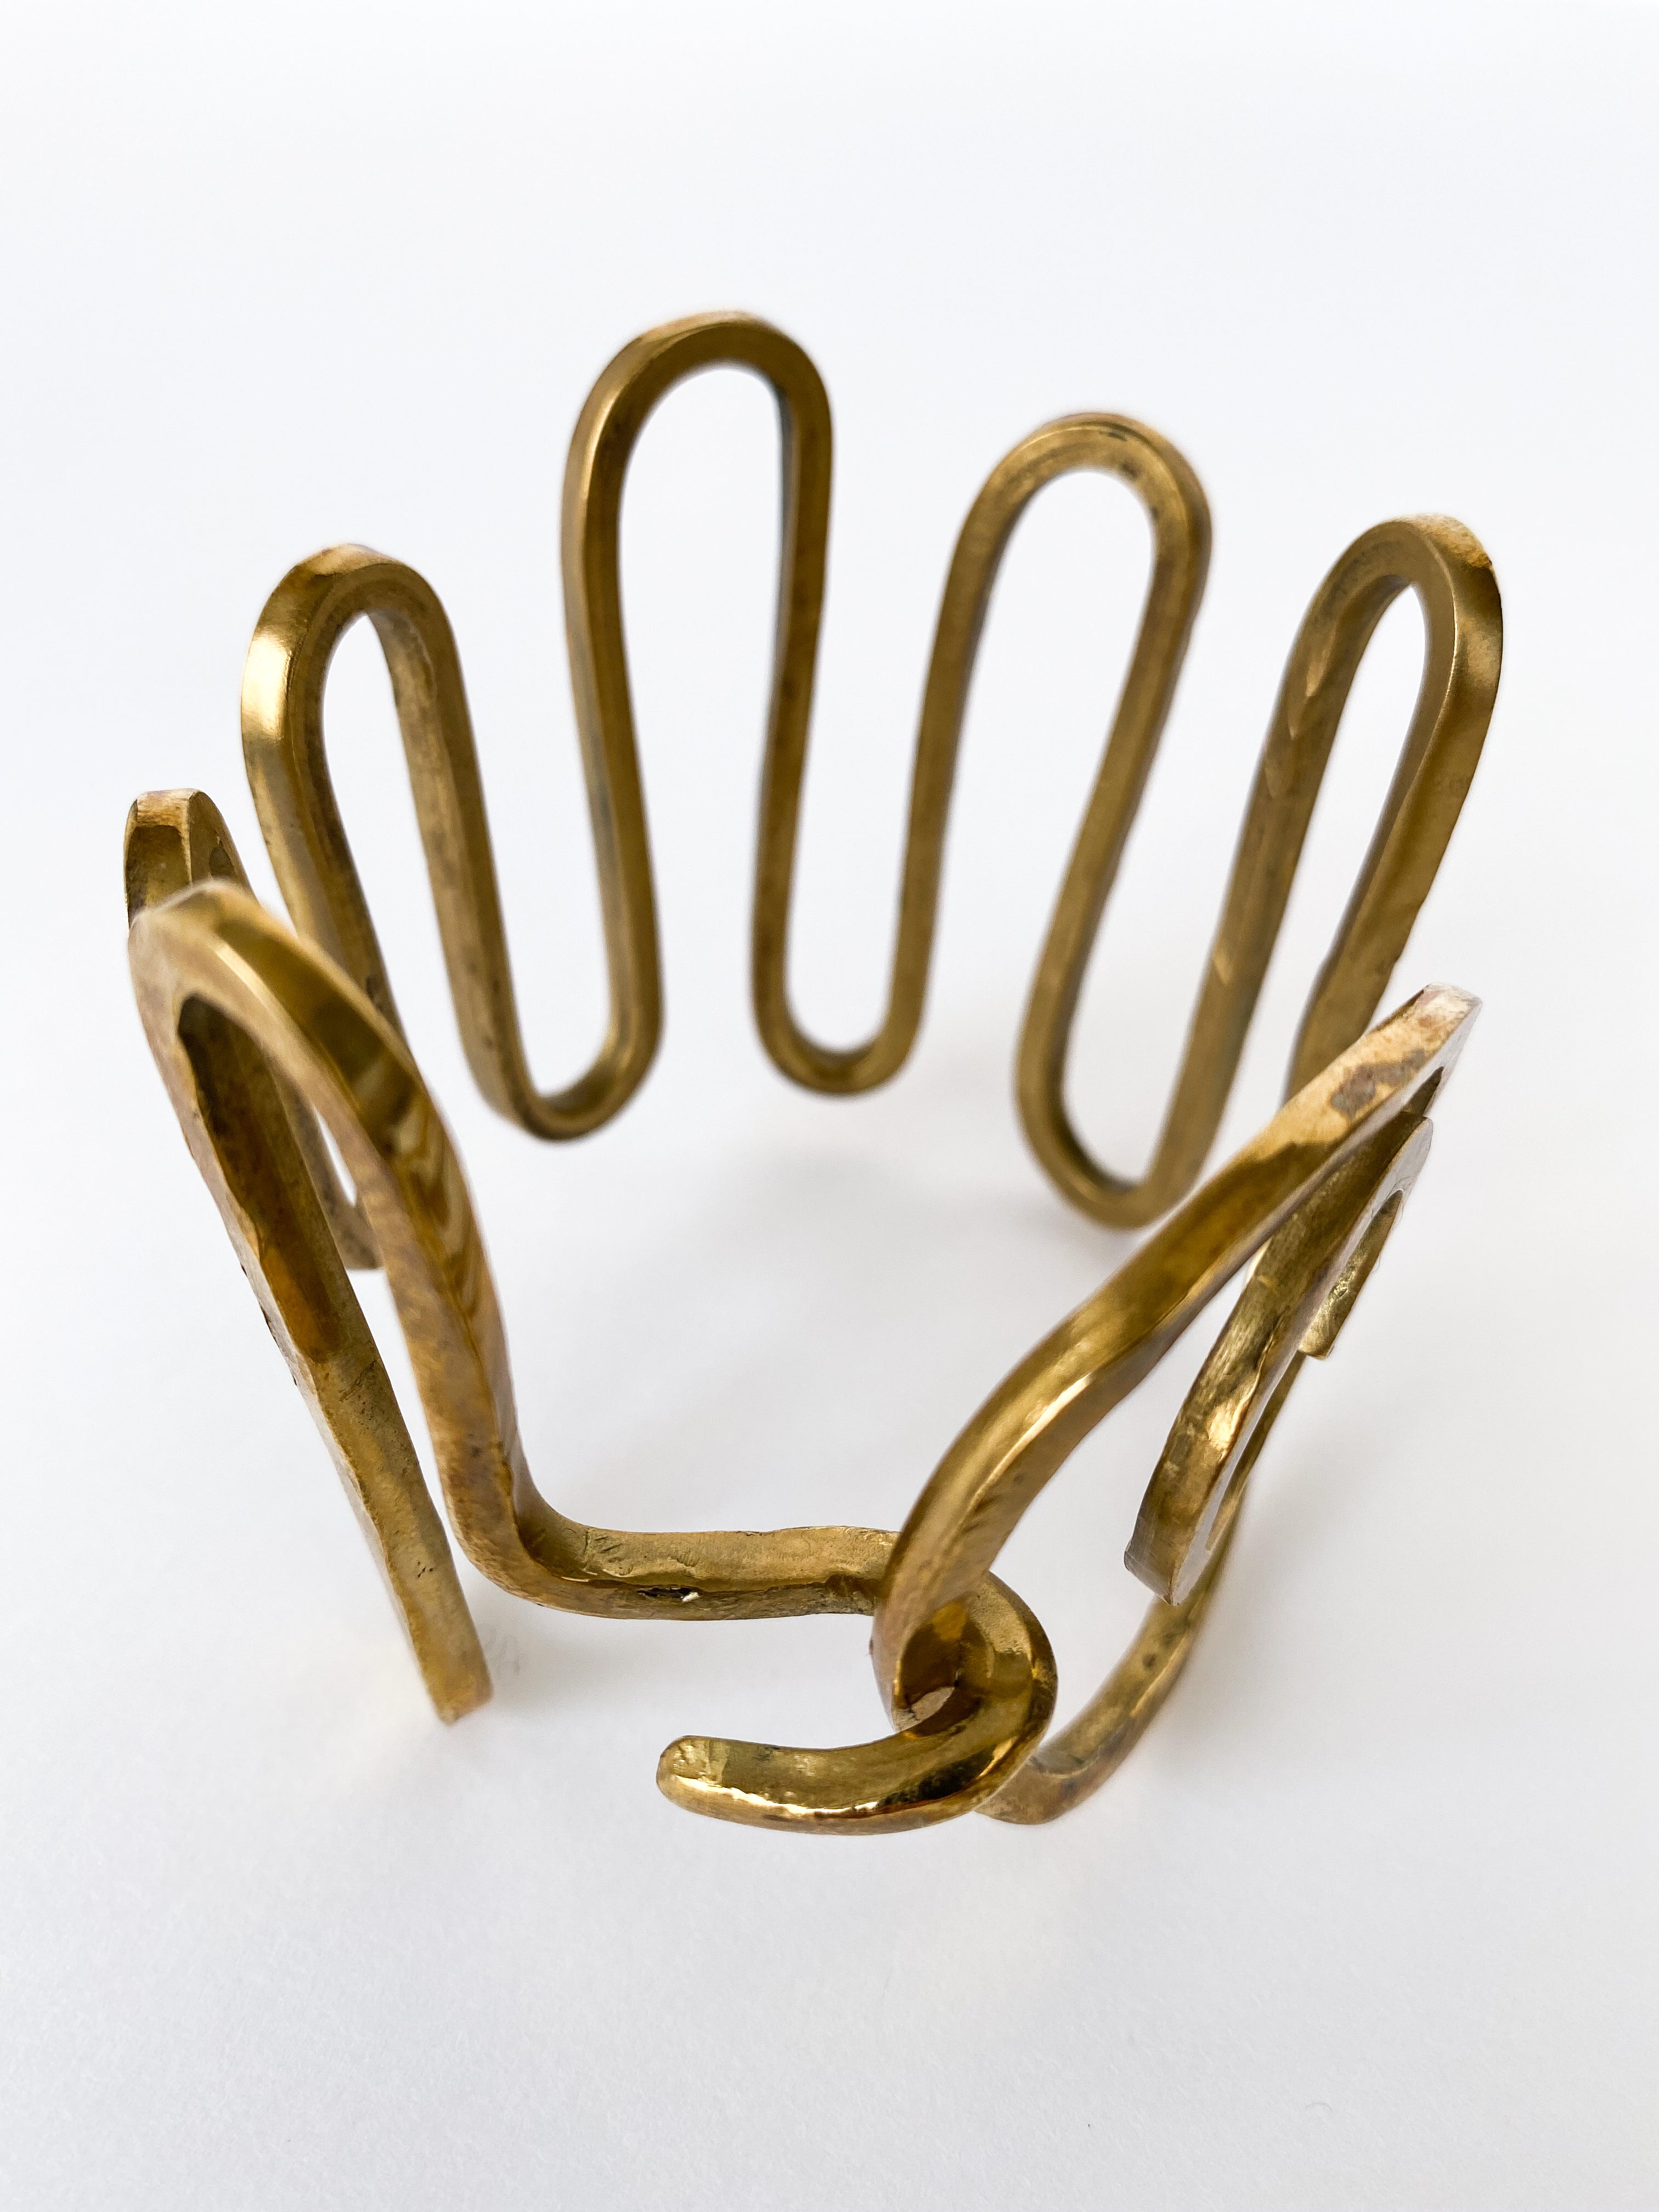 Artisanal bracelet in hammered brass